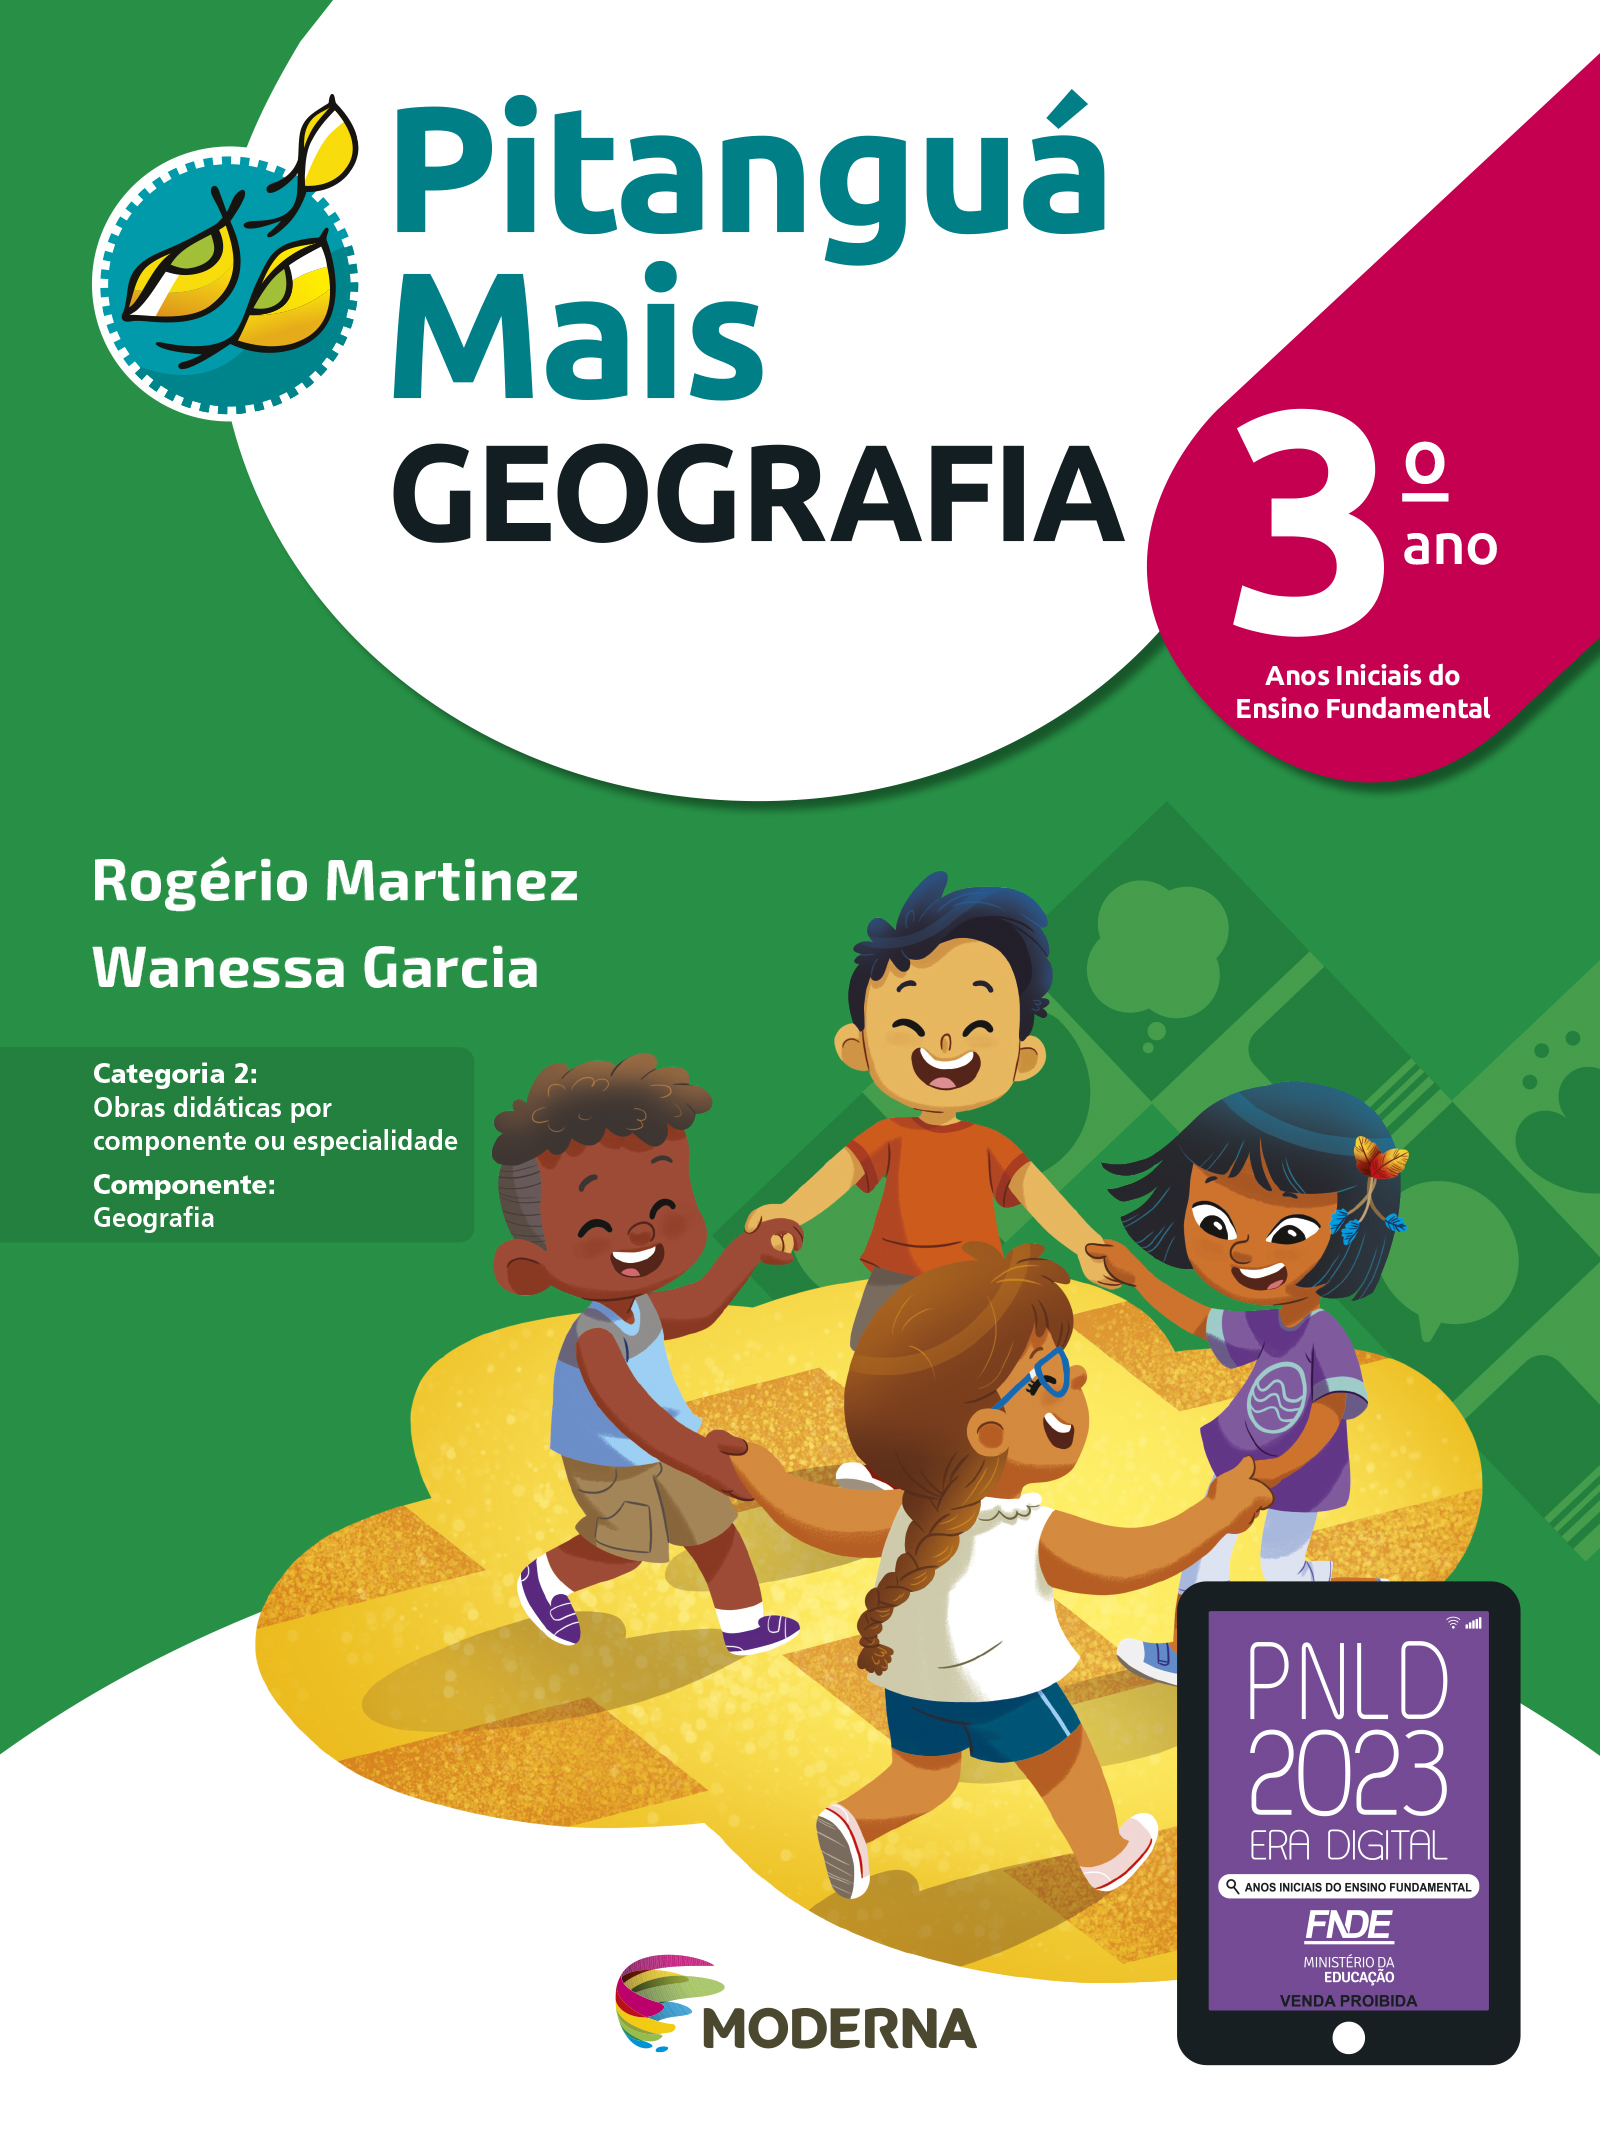 IMAGEM: capa do livro pitanguá geografia terceiro ano, que mostra dois meninos e duas meninas brincando de roda. FIM DA IMAGEM.